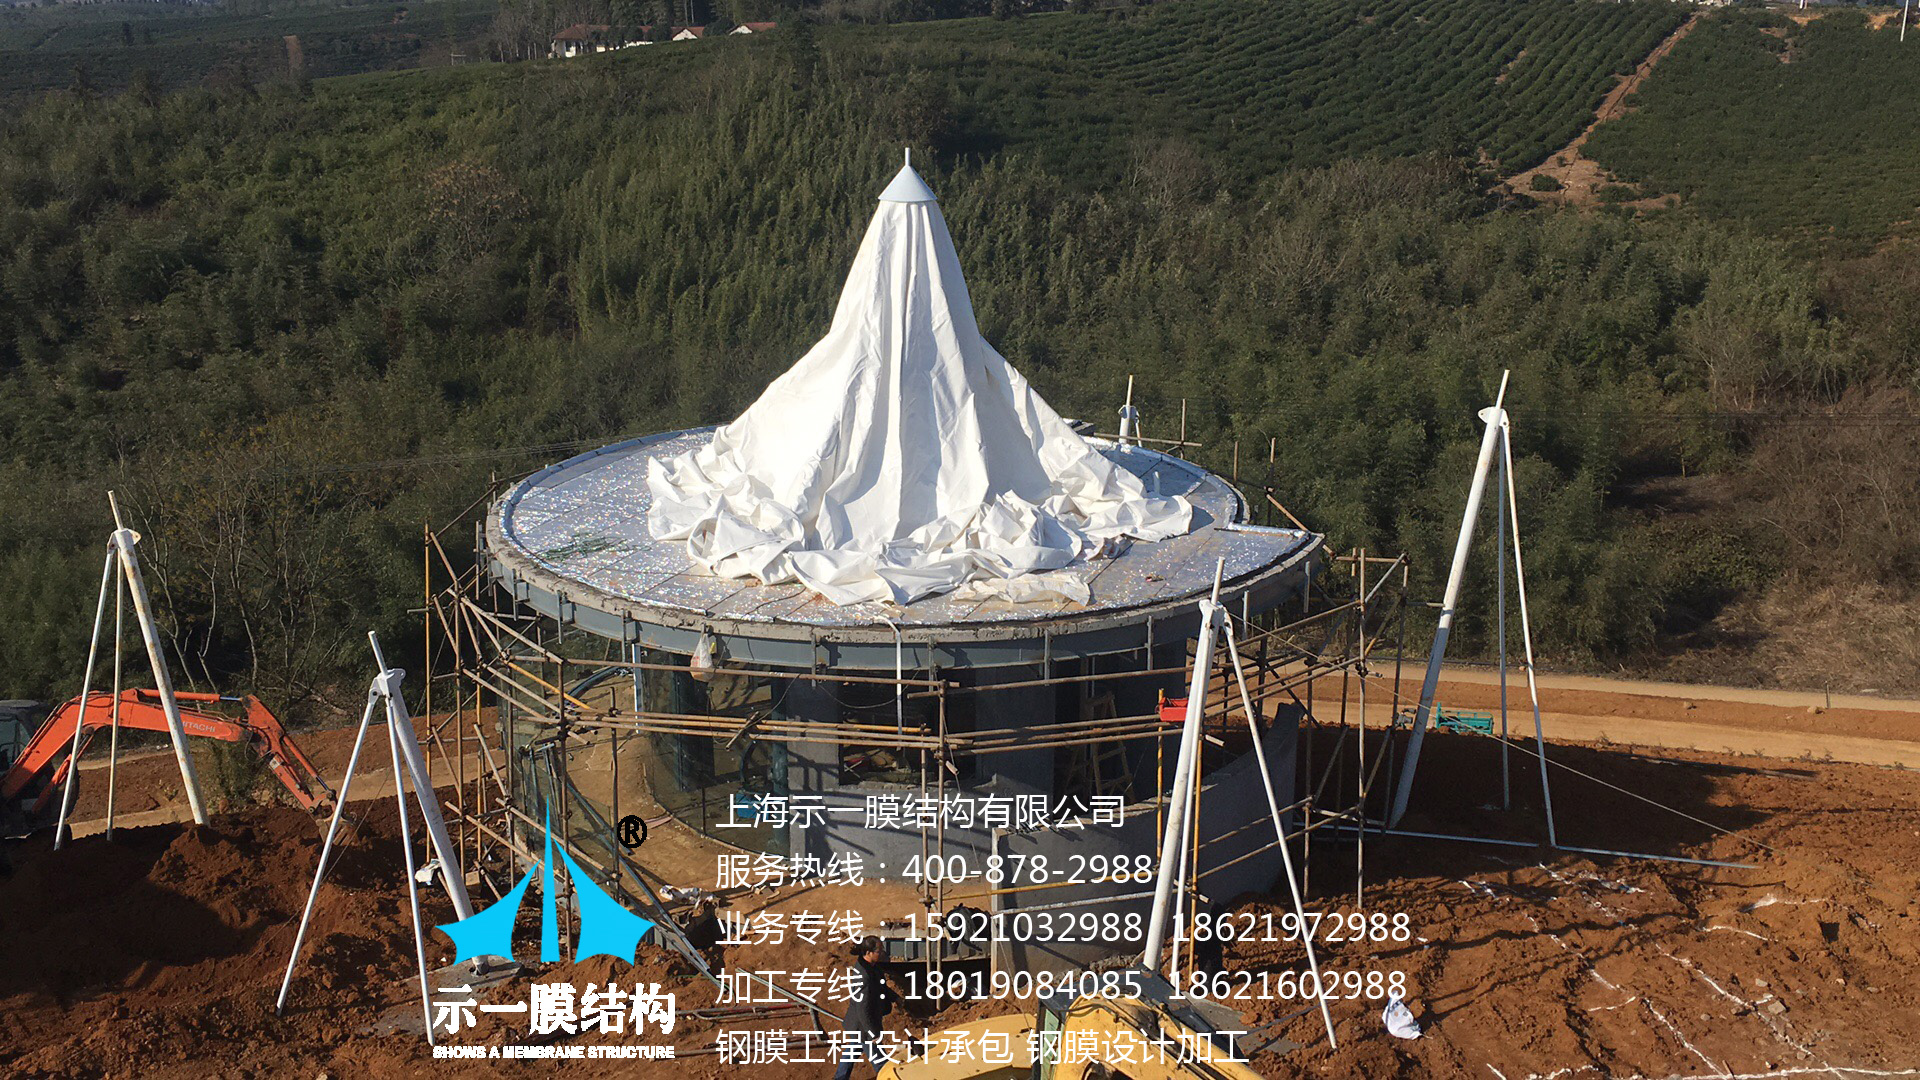 上海示一膜结构暨度假山庄膜结构遮阳帐篷-第四部分